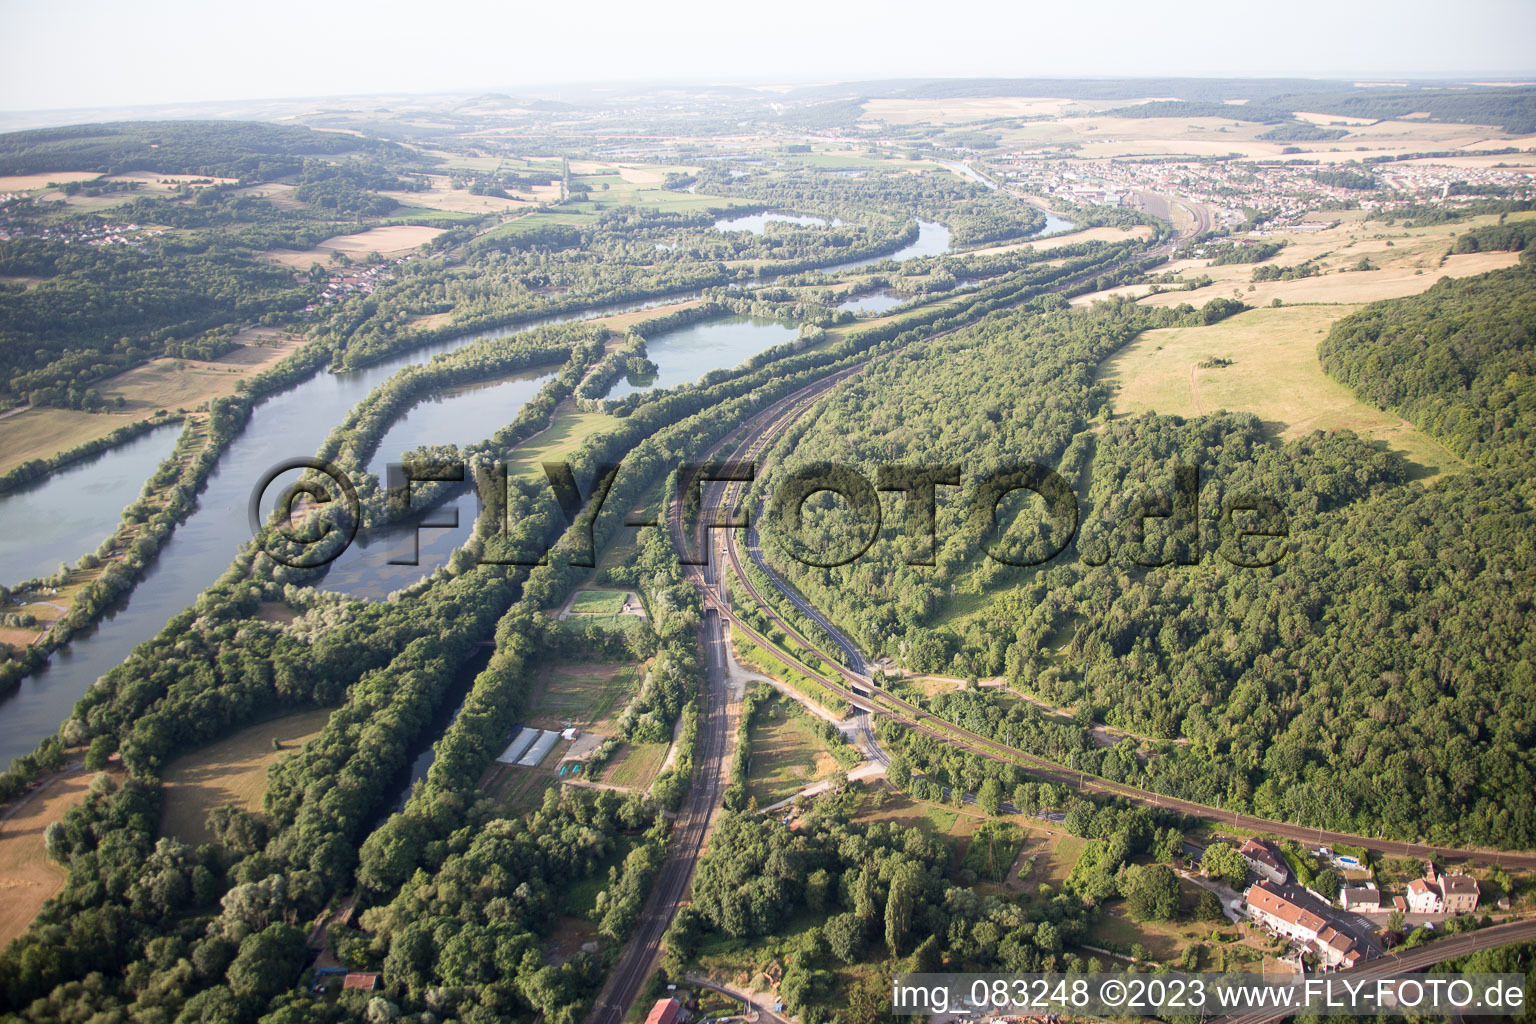 Arnaville im Bundesland Meurthe-et-Moselle, Frankreich von oben gesehen